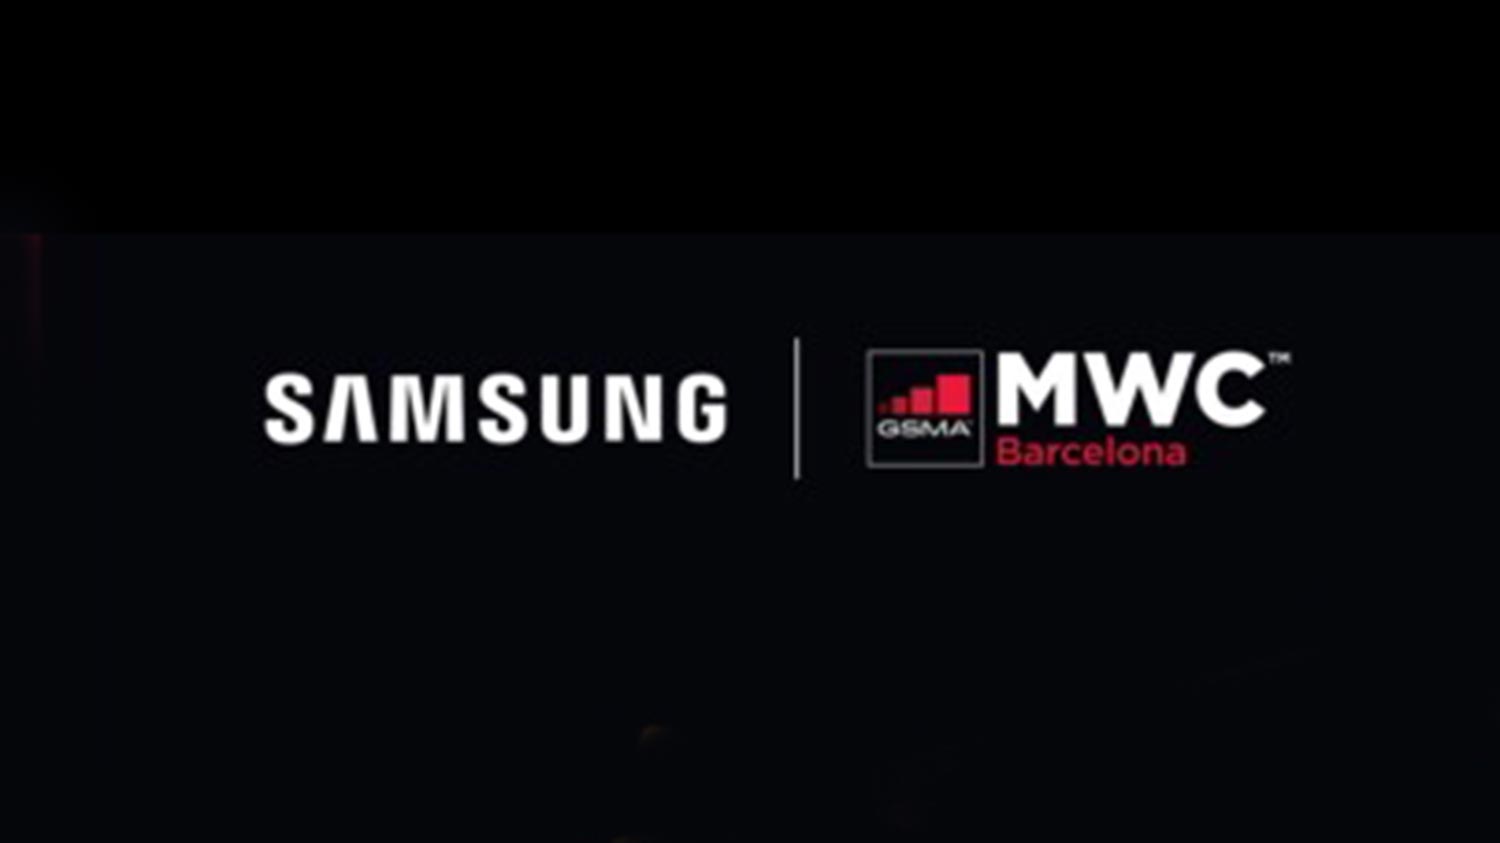 Samsung Mengadakan Acara Maya Pada 28 Jun Sempena MWC Barcelona